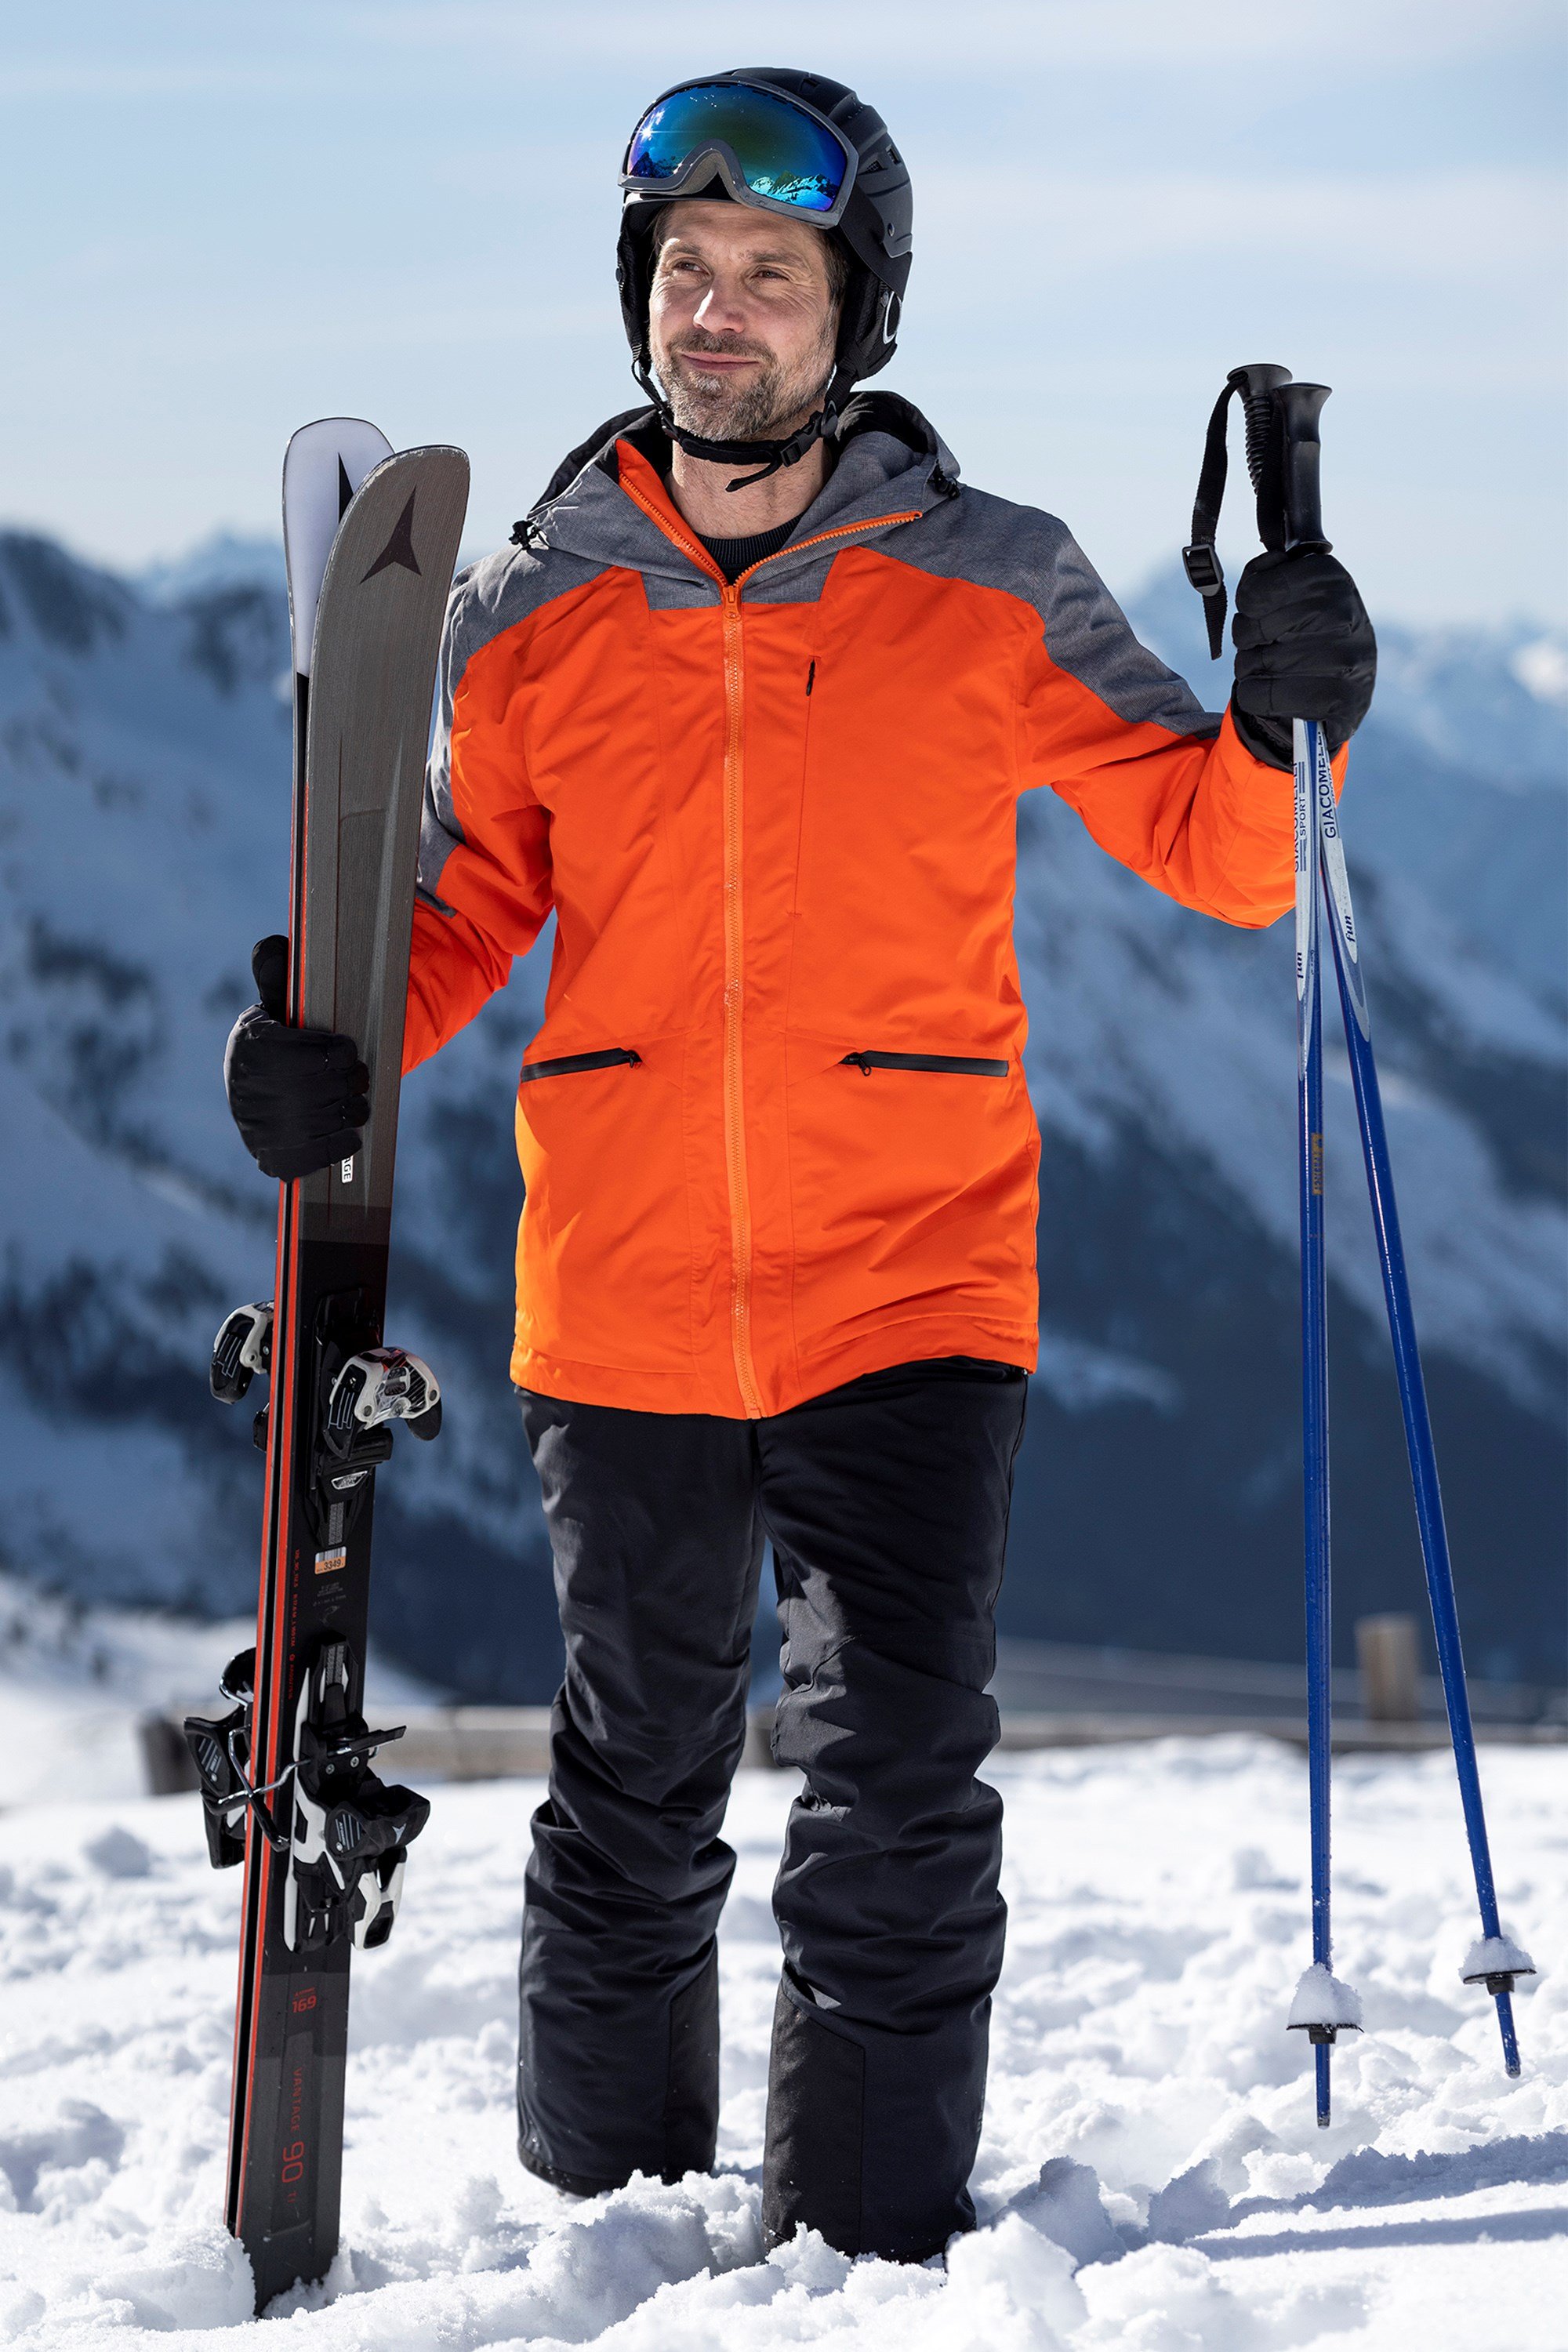 https://img.cdn.mountainwarehouse.com/product/050766/050766_ora_orion_ski_jacket_men_ecom_lifestyle_aw22_01.jpg